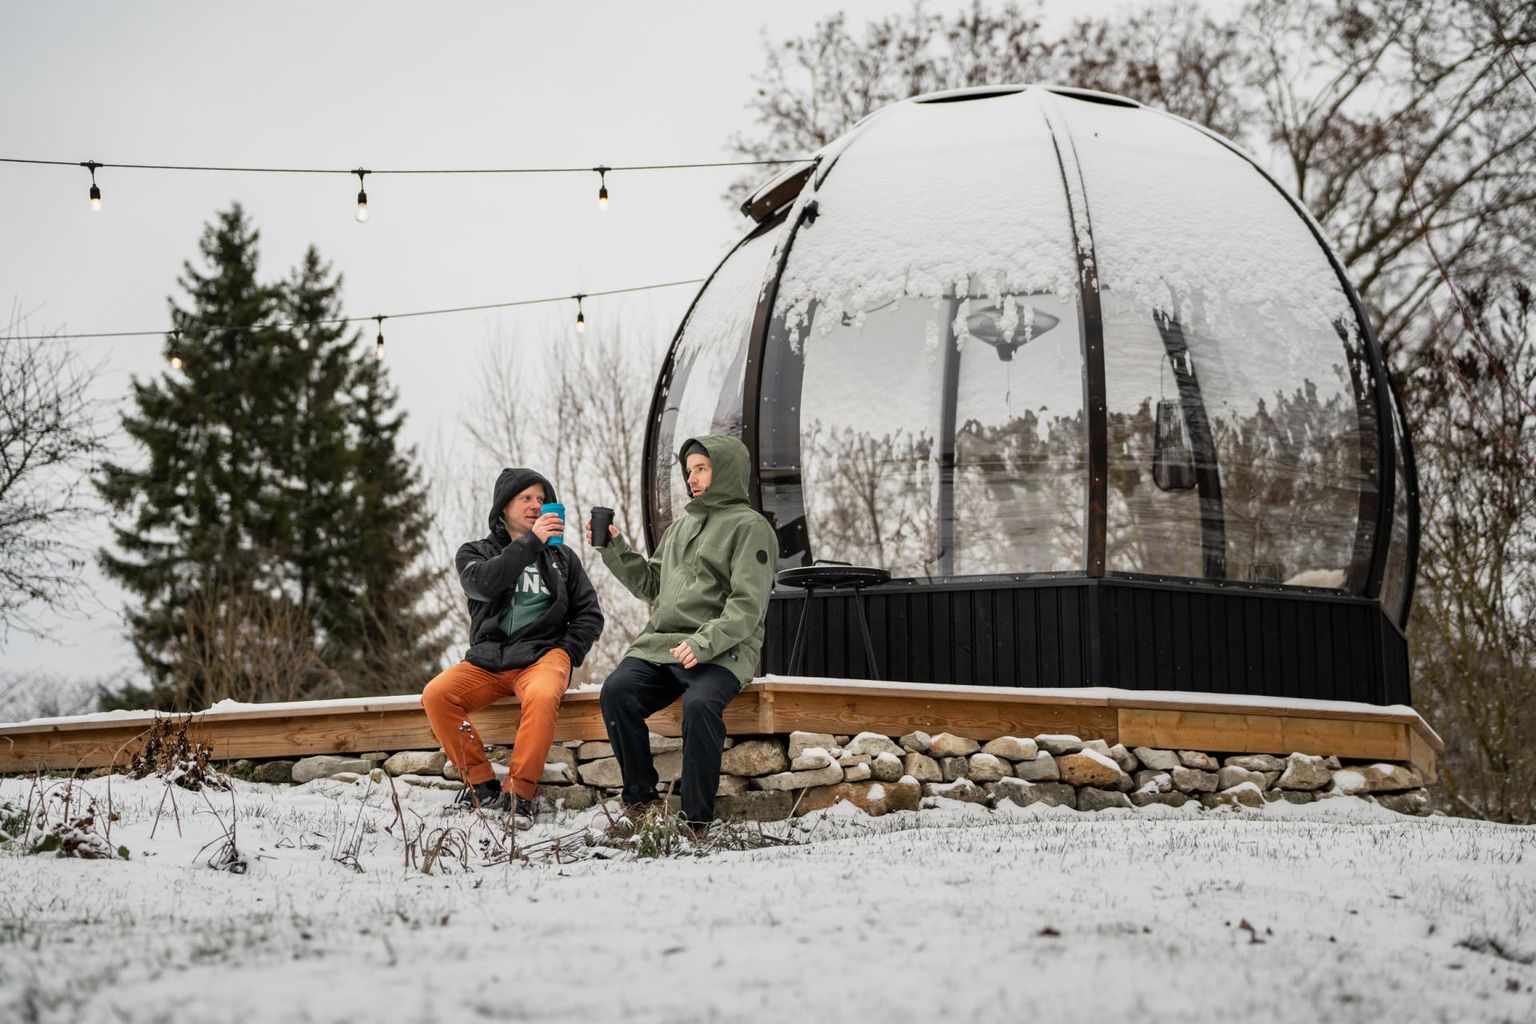 Tänavuseks aasta tooteks valiti rahvahääletusel
Varmo Juurika ja Rasmus Paimre kätetööna valminud kuppelmaja
Domelor, kus saab mõnusalt aega veeta olenemata ilmast.